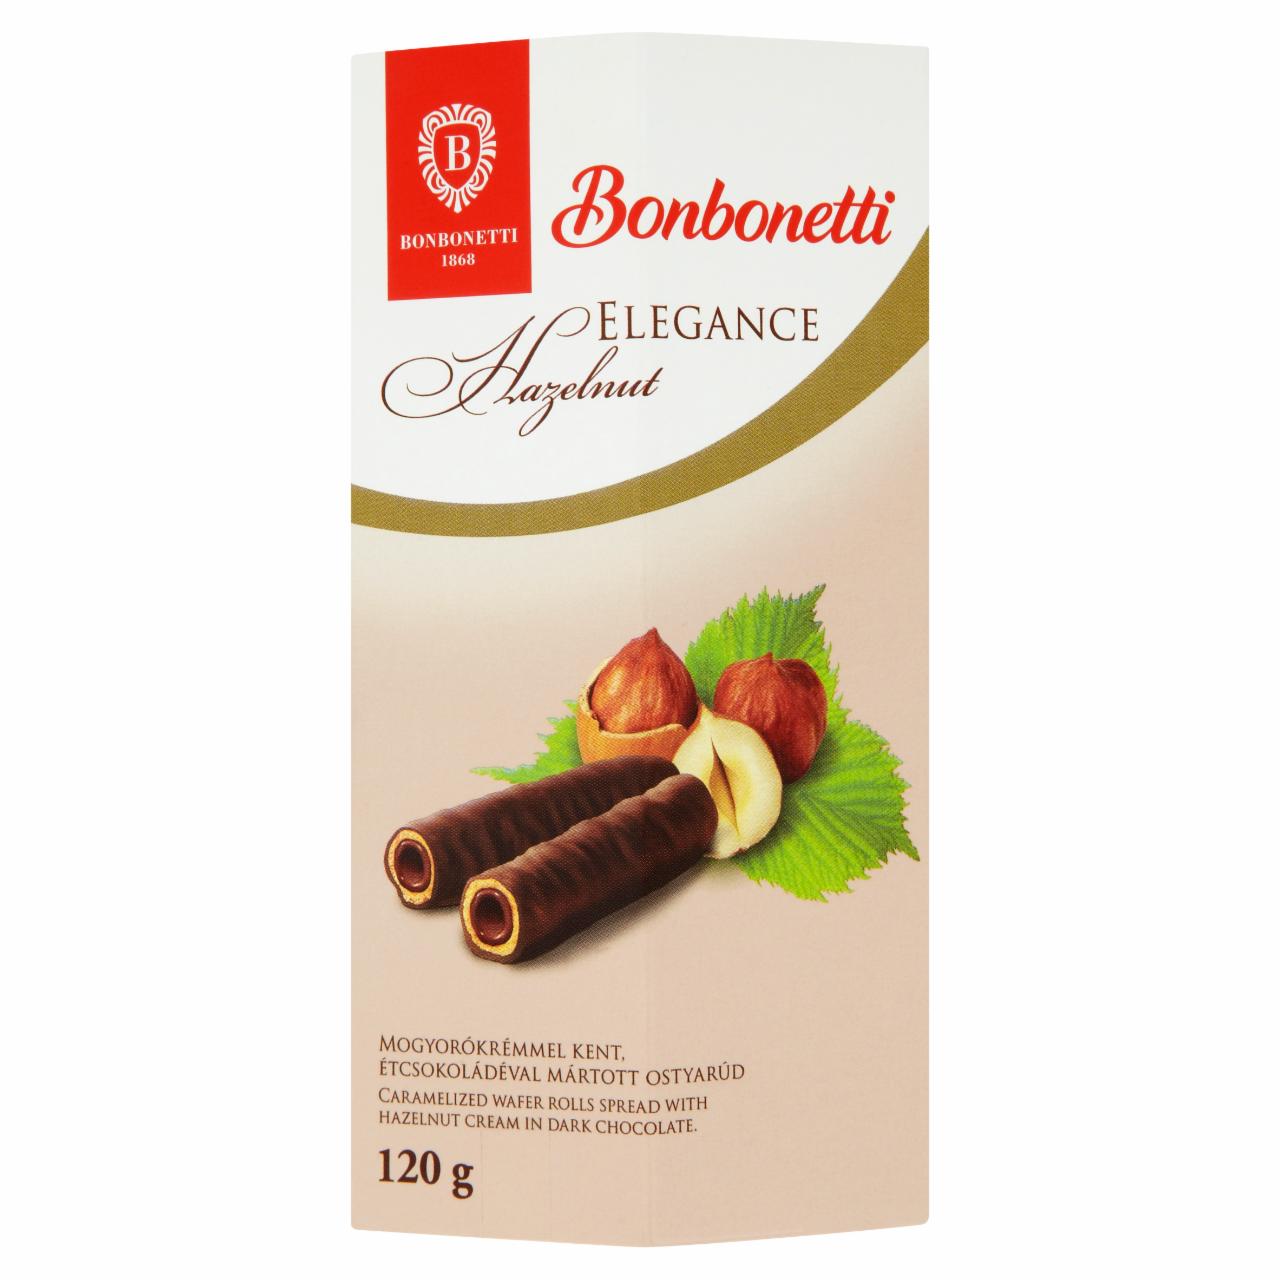 Képek - Bonbonetti Elegance mogyorókrémmel kent, étcsokoládéval mártott ostyarúd 120 g